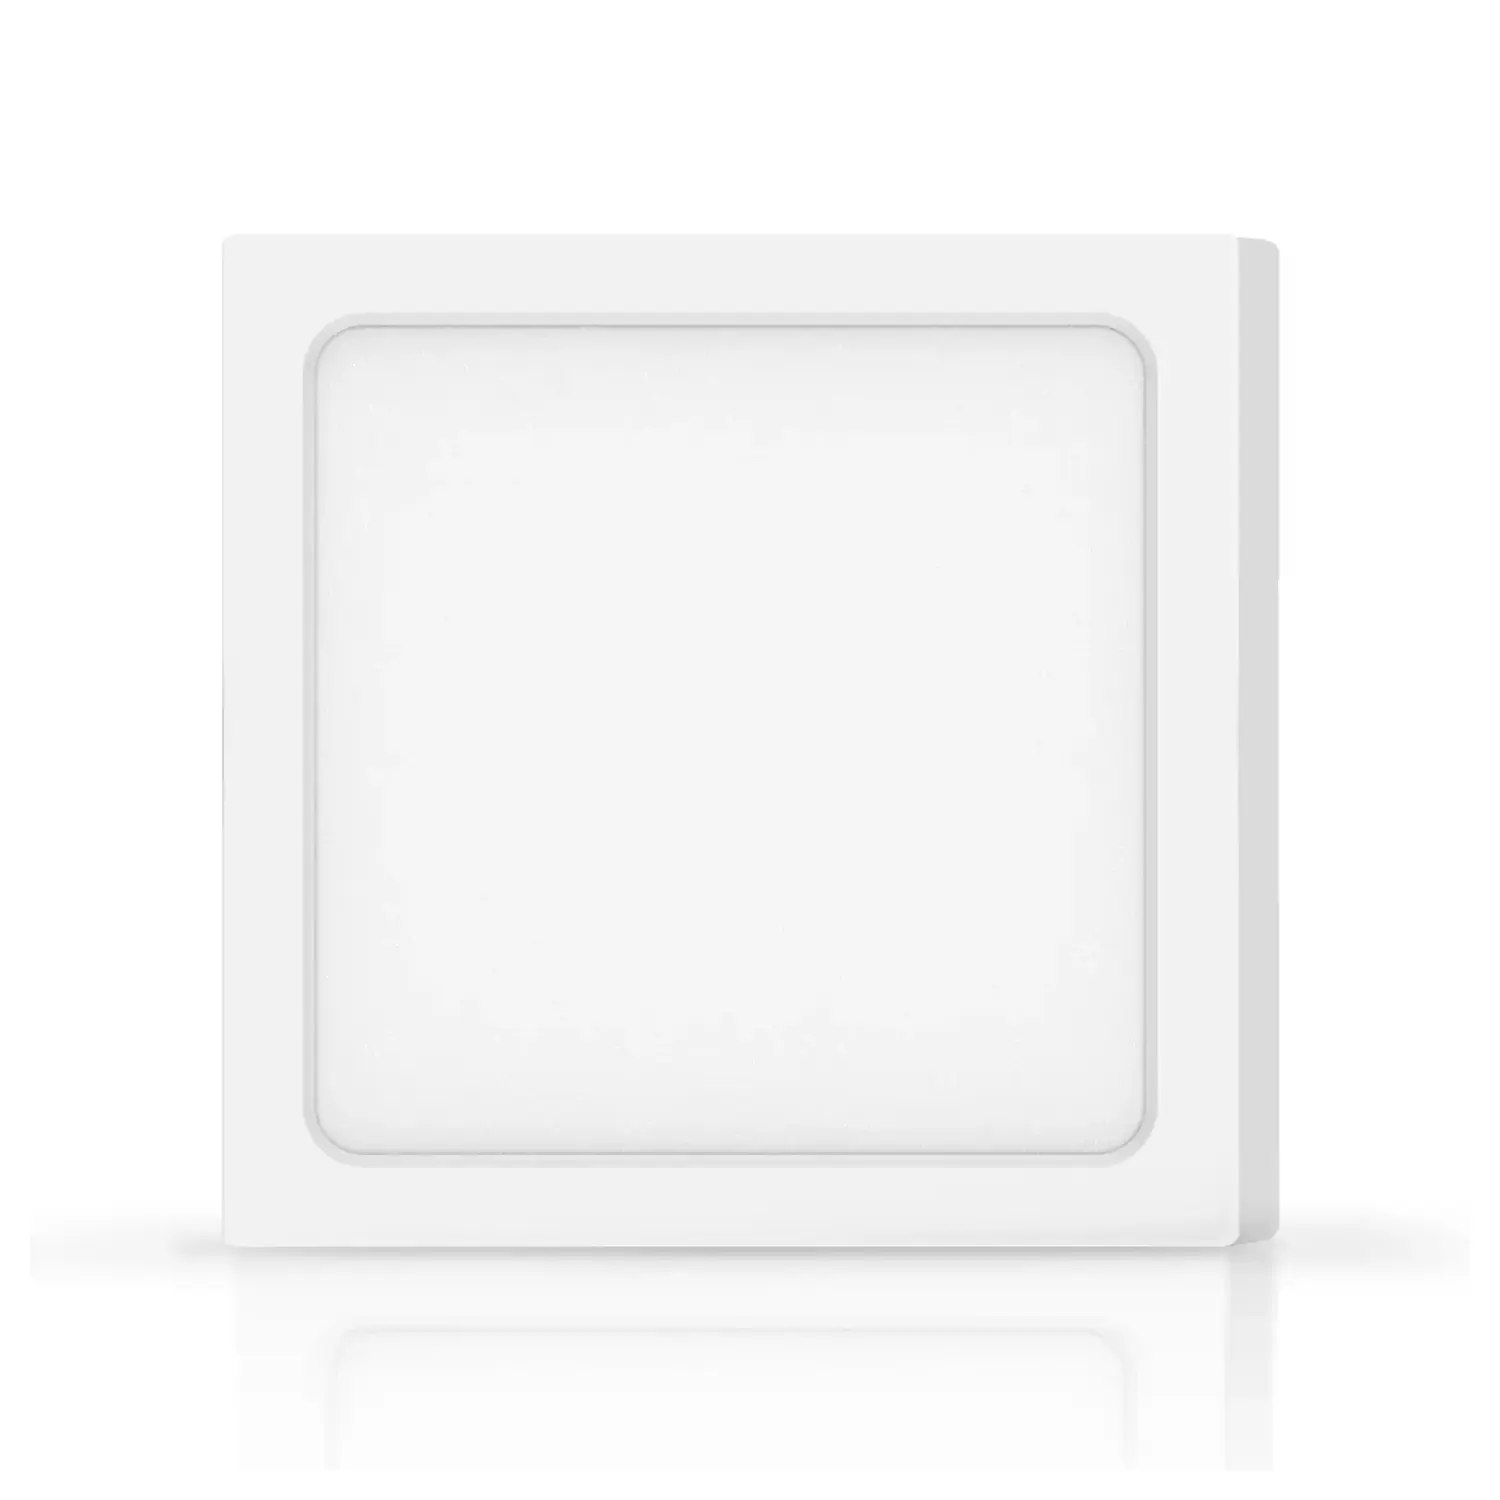 immagine del prodotto pannello luminoso led da parete 18 watt bianco freddo quadrato